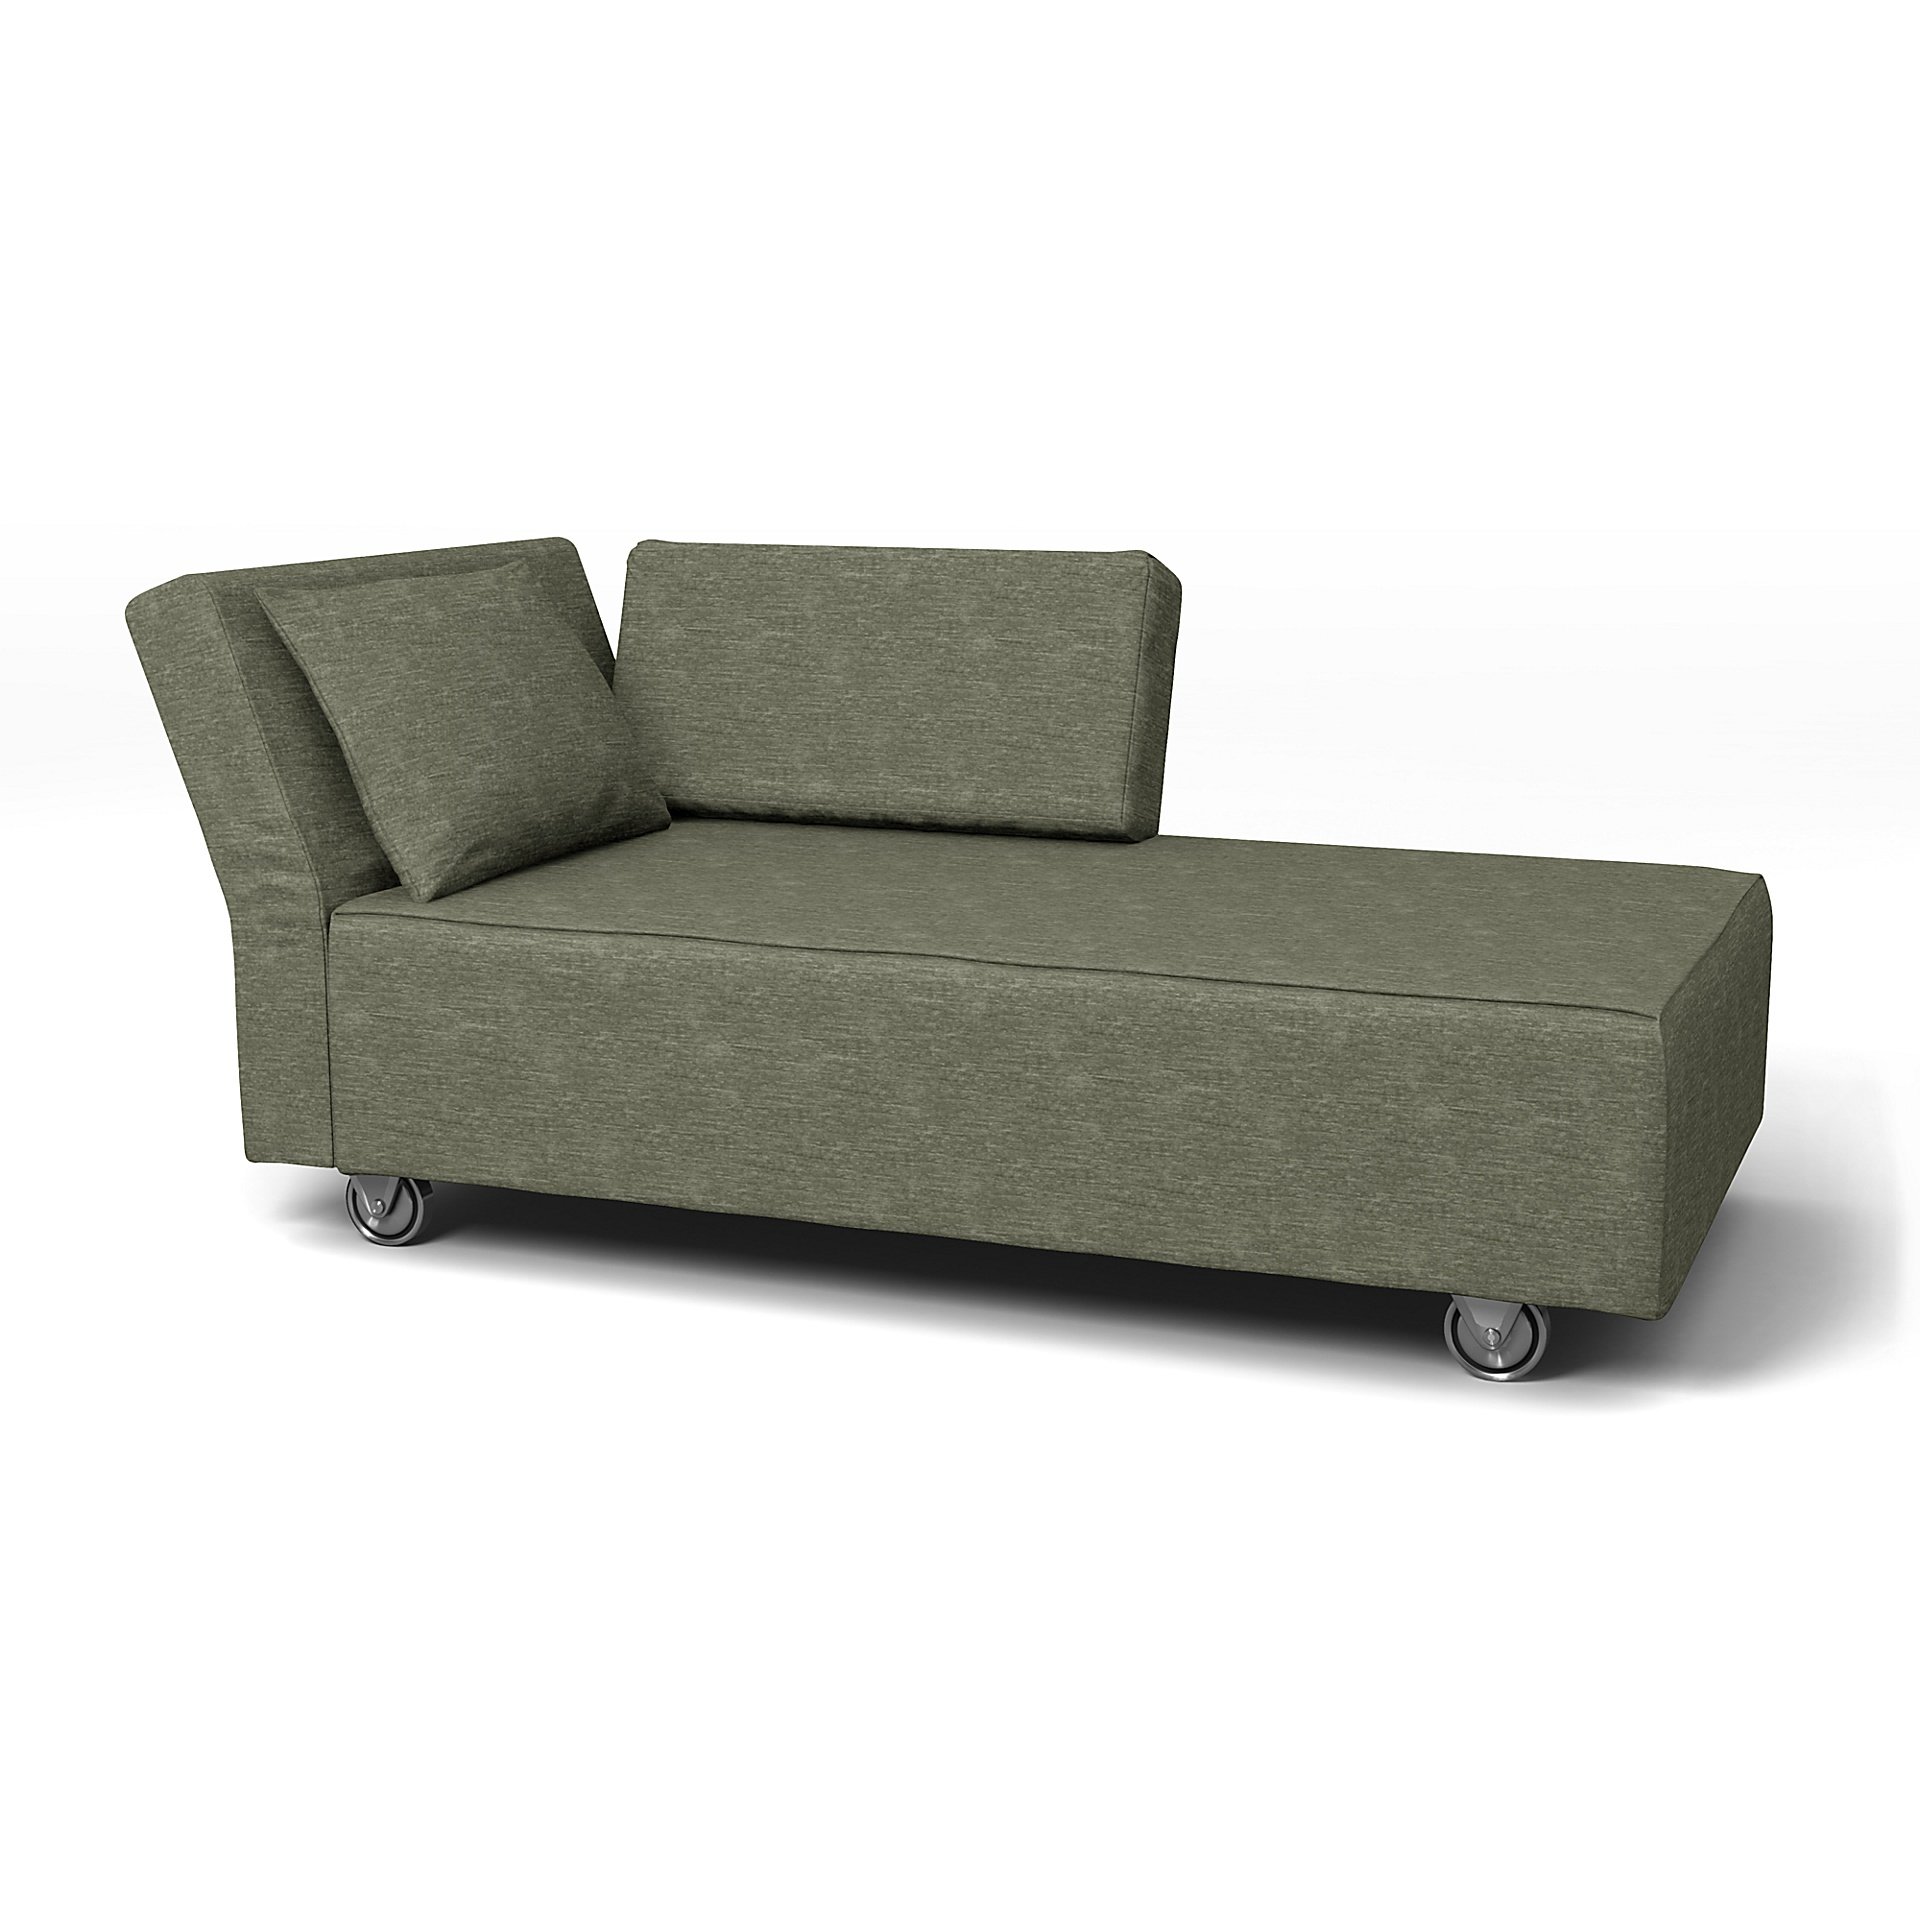 IKEA - Falsterbo Chaise with Left Armrest Cover, Green Grey, Velvet - Bemz